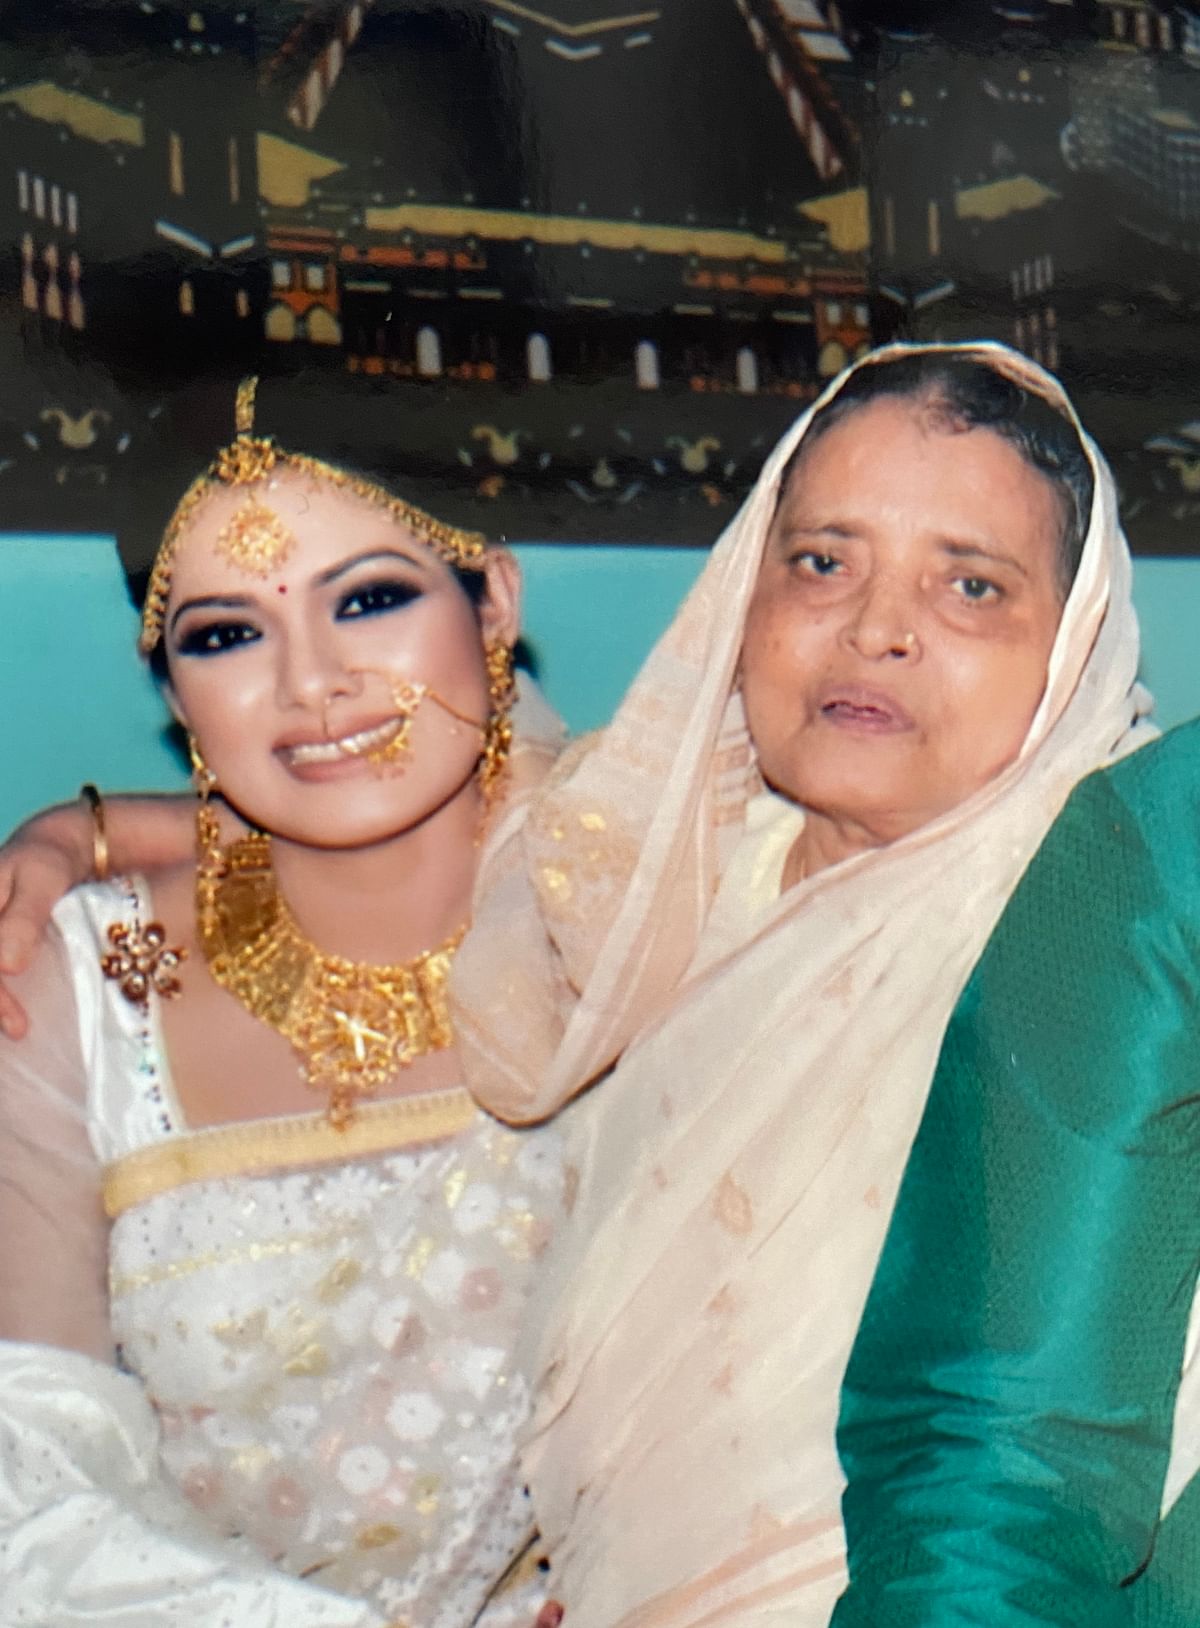 আমার বিয়ের দিন তিশার সঙ্গে আম্মা, ২০১০। ছবি: লেখকের পারিবারিক অ্যালবাম থেকে